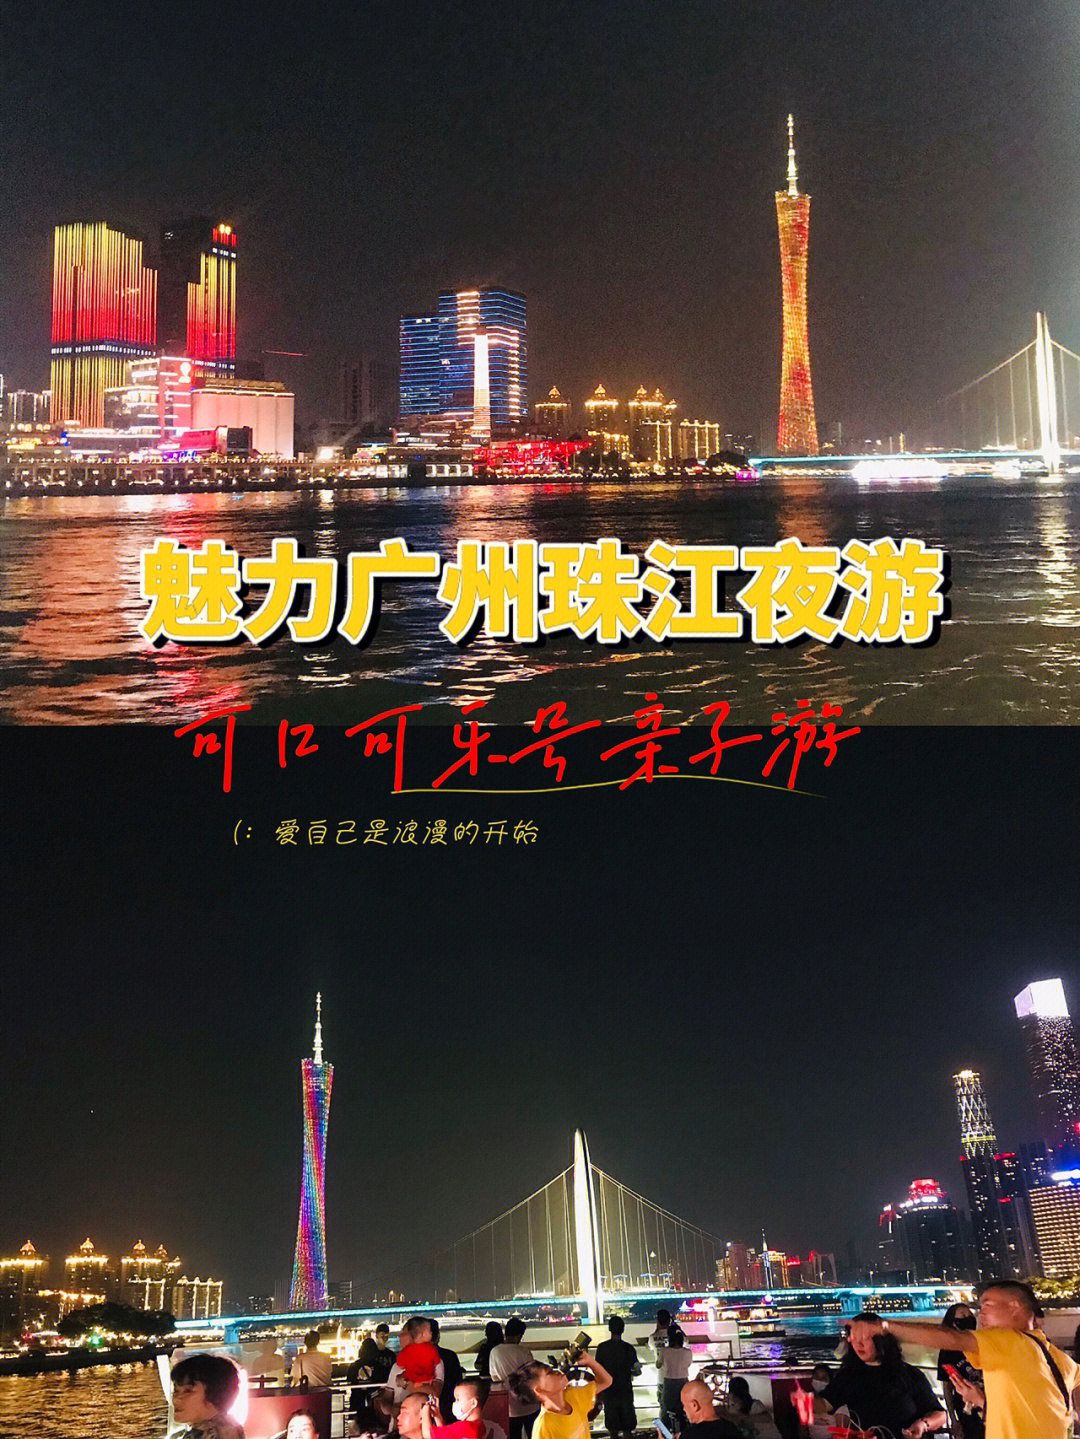 广州珠江夜游线路图图片